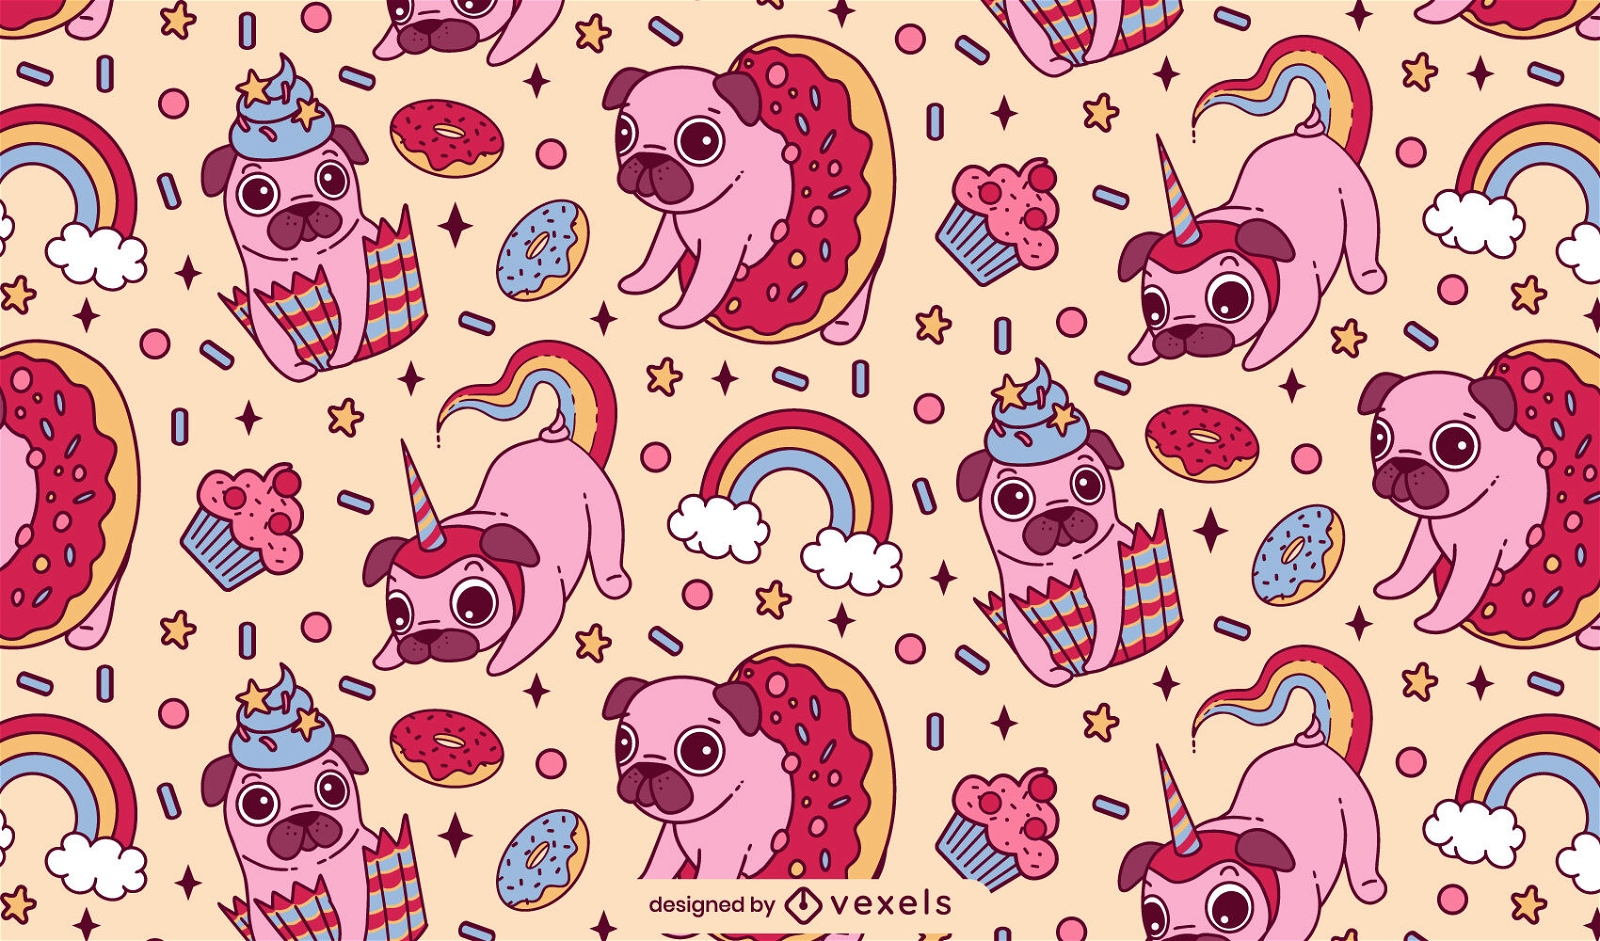 Cute pug pattern design